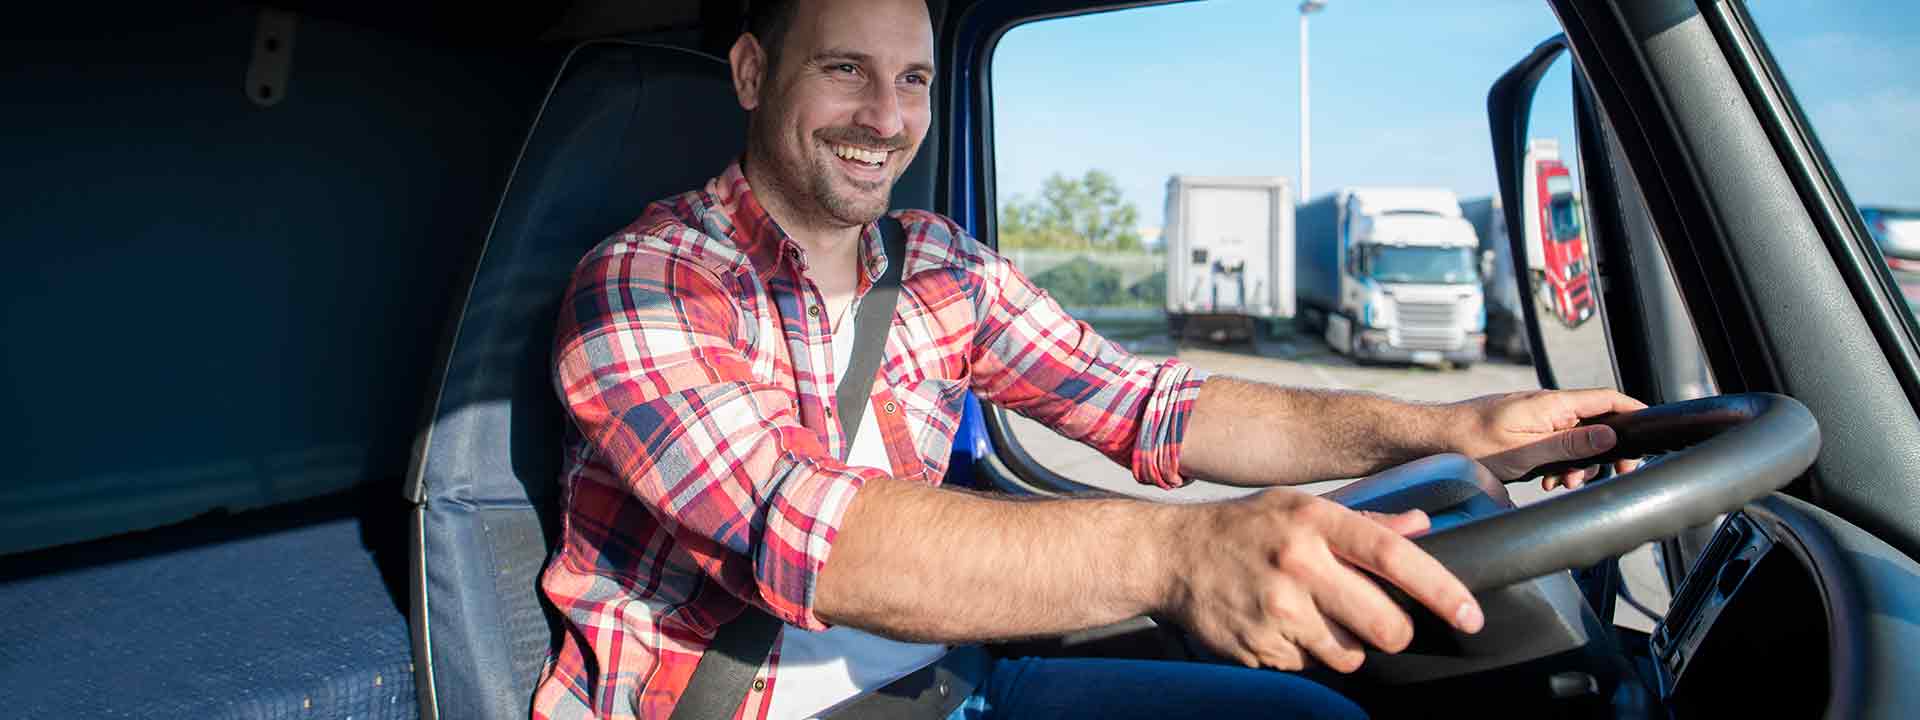 American Truck Simulator recebe novos tipos de carretas - Blog do  Caminhoneiro